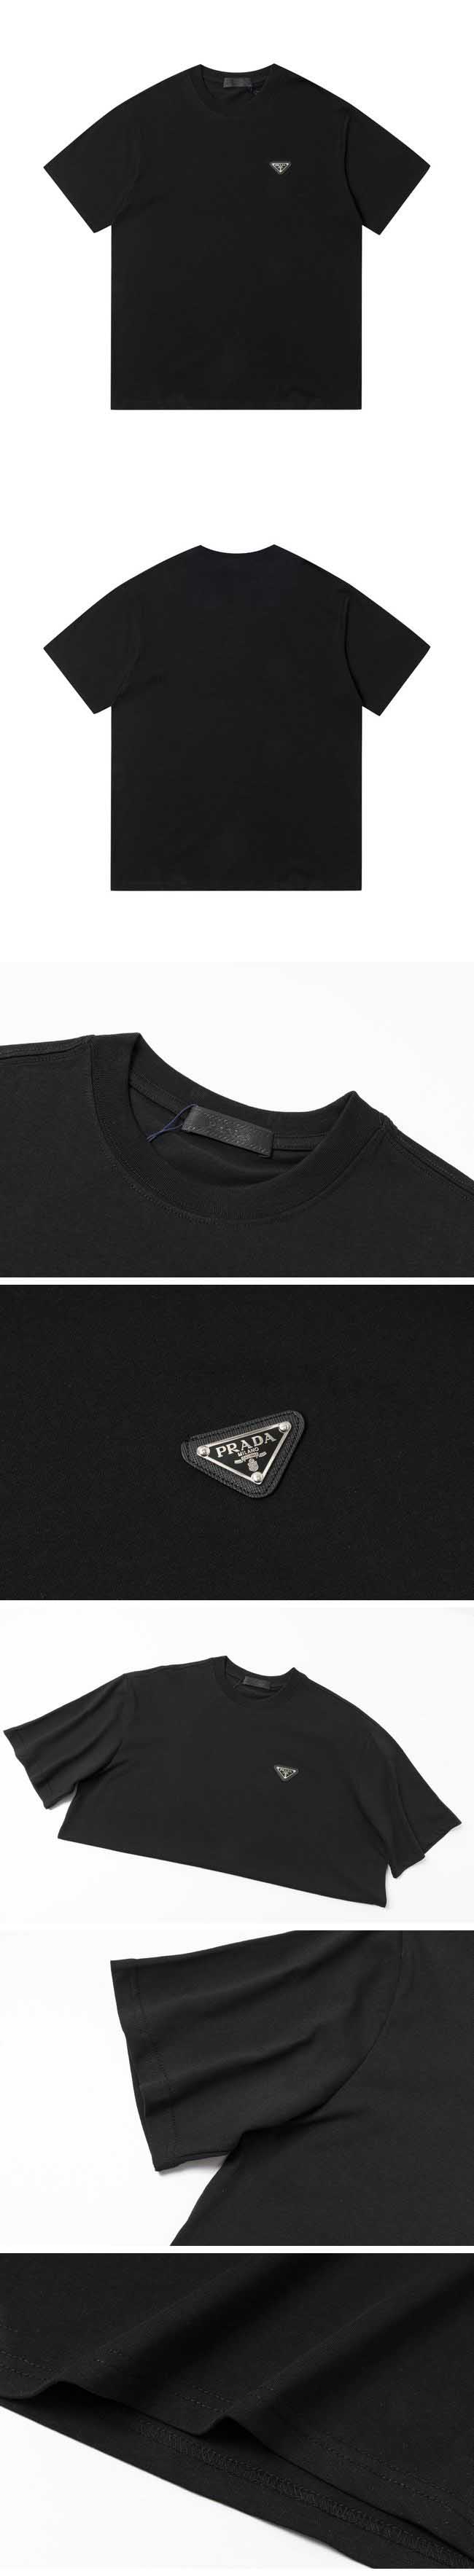 Prada Chest Triangle Simple Logo Tee プラダ チェスト トライアングル シンプル ロゴ Tシャツ ブラック